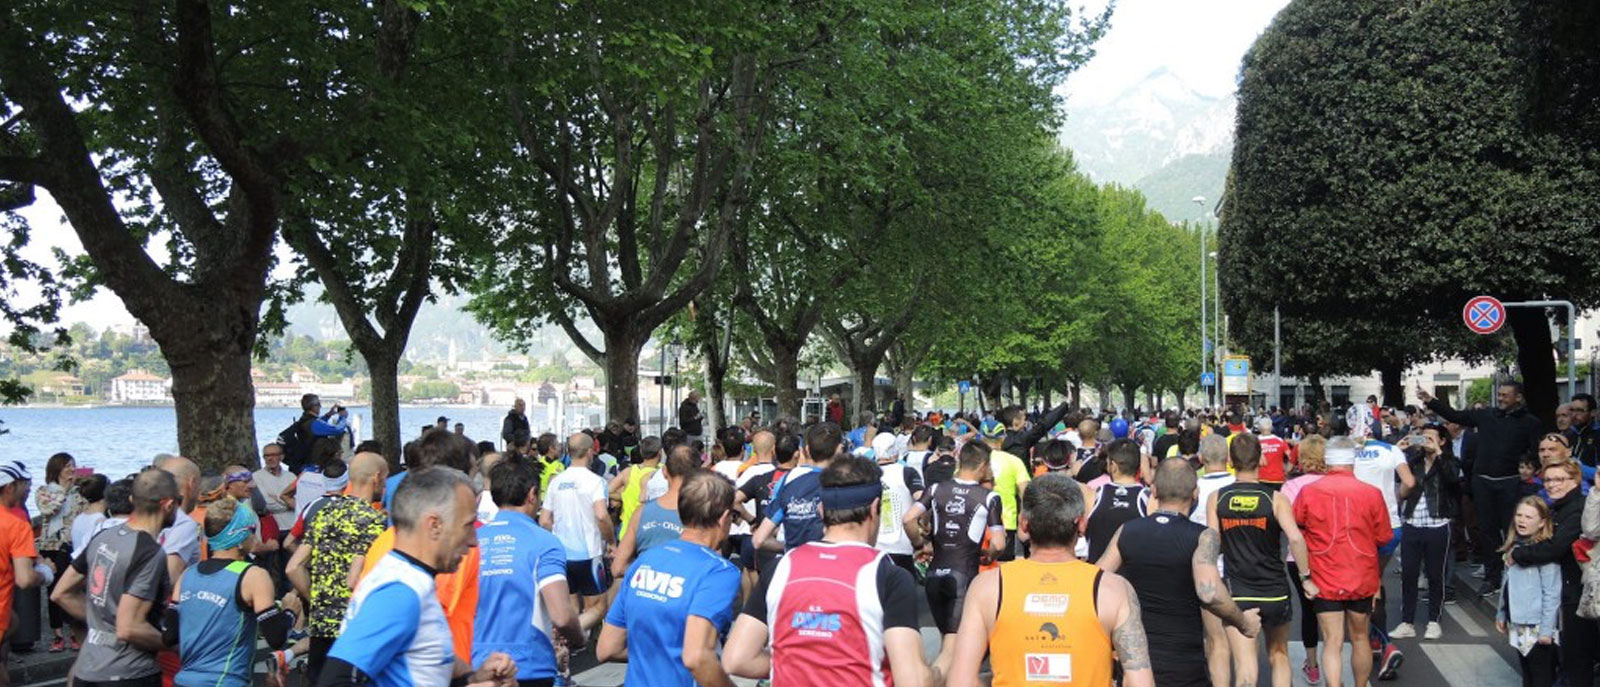 Grande successo alla Lecco Half Marathon